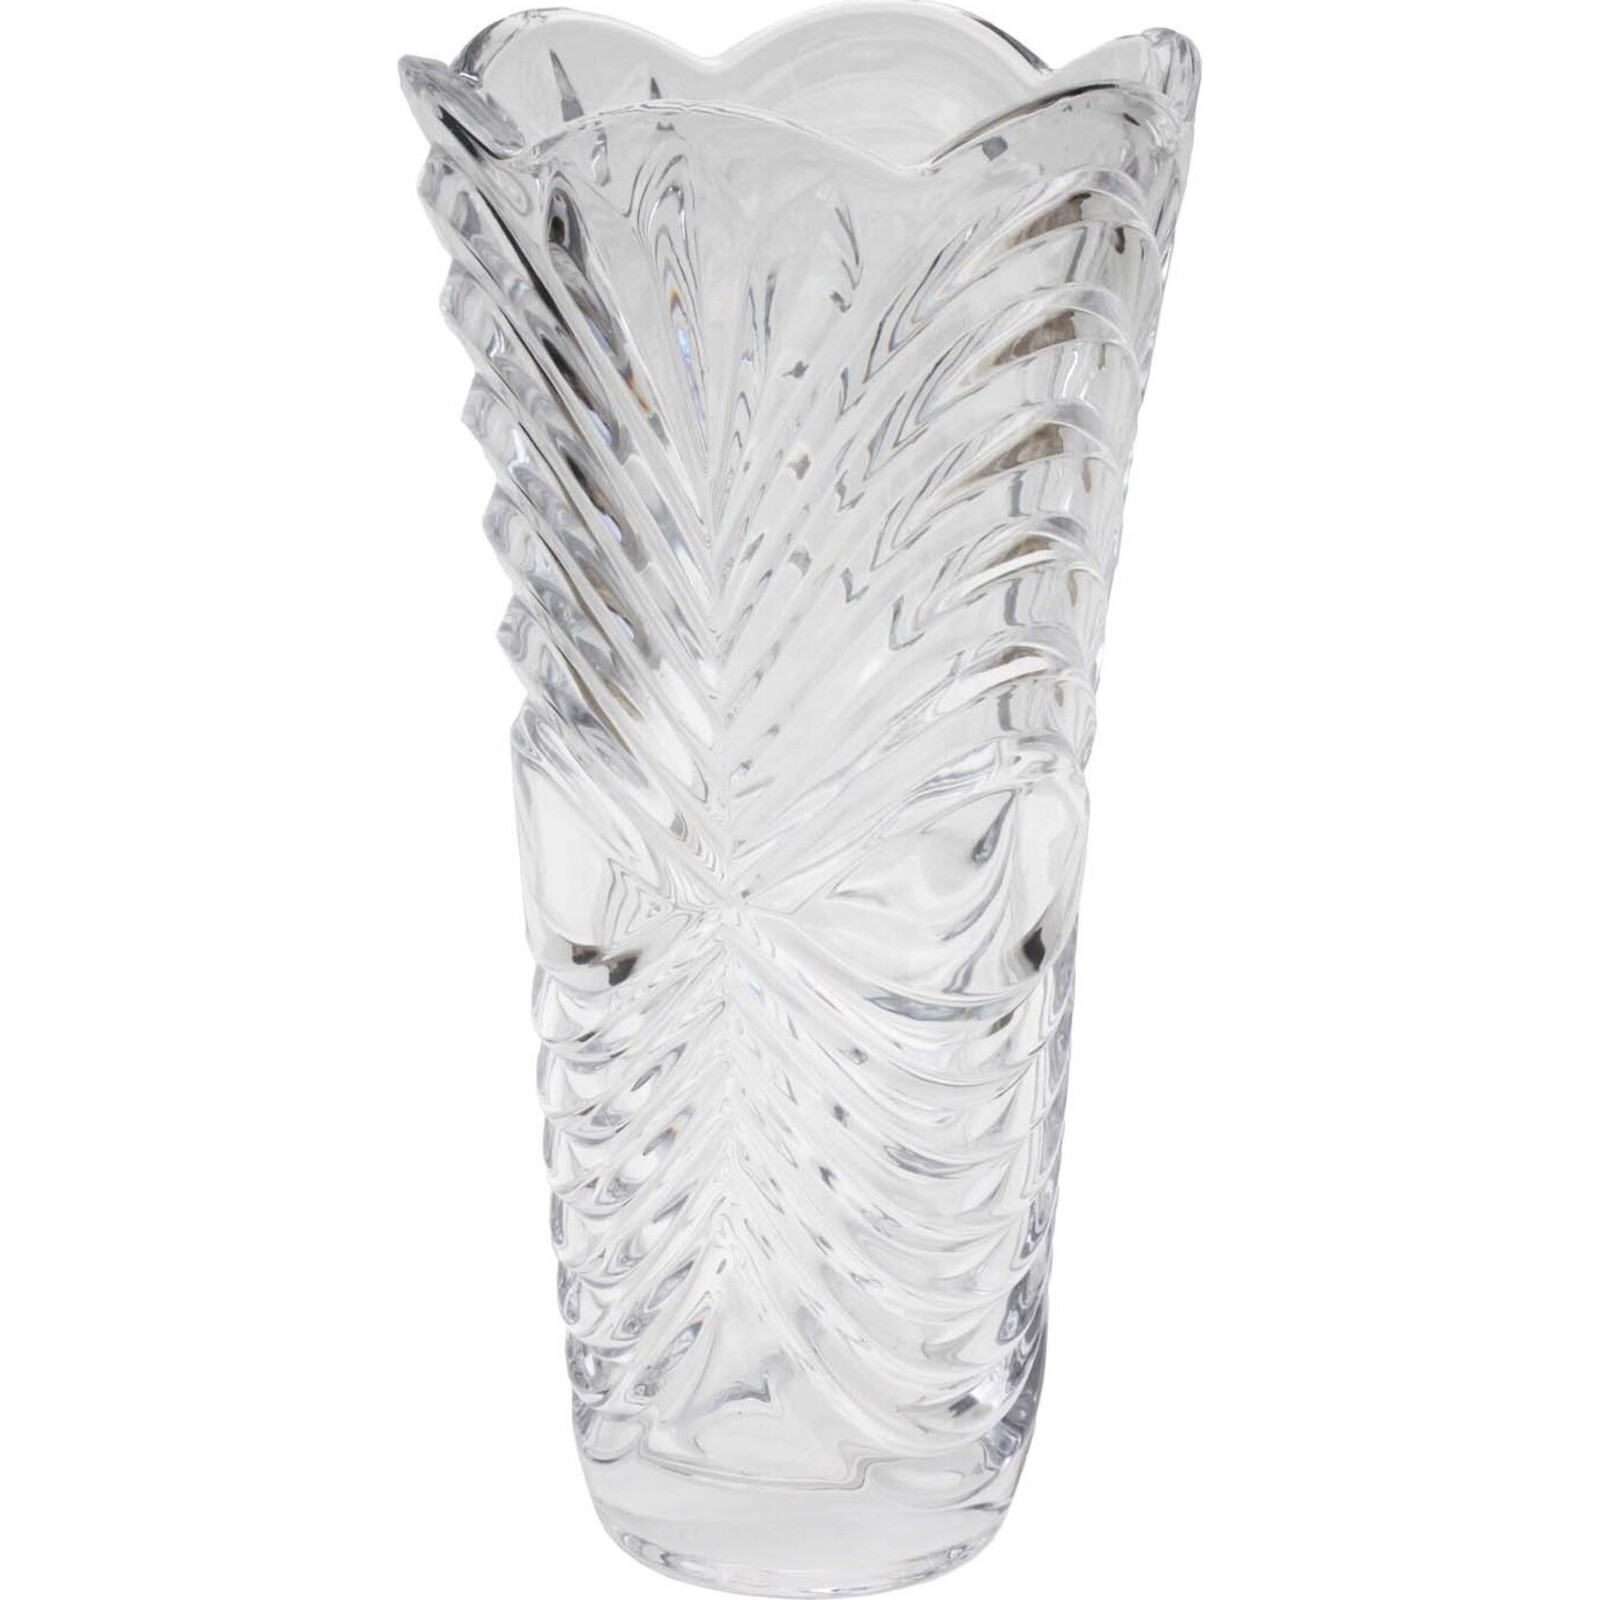 Glass Vase -  Starburst